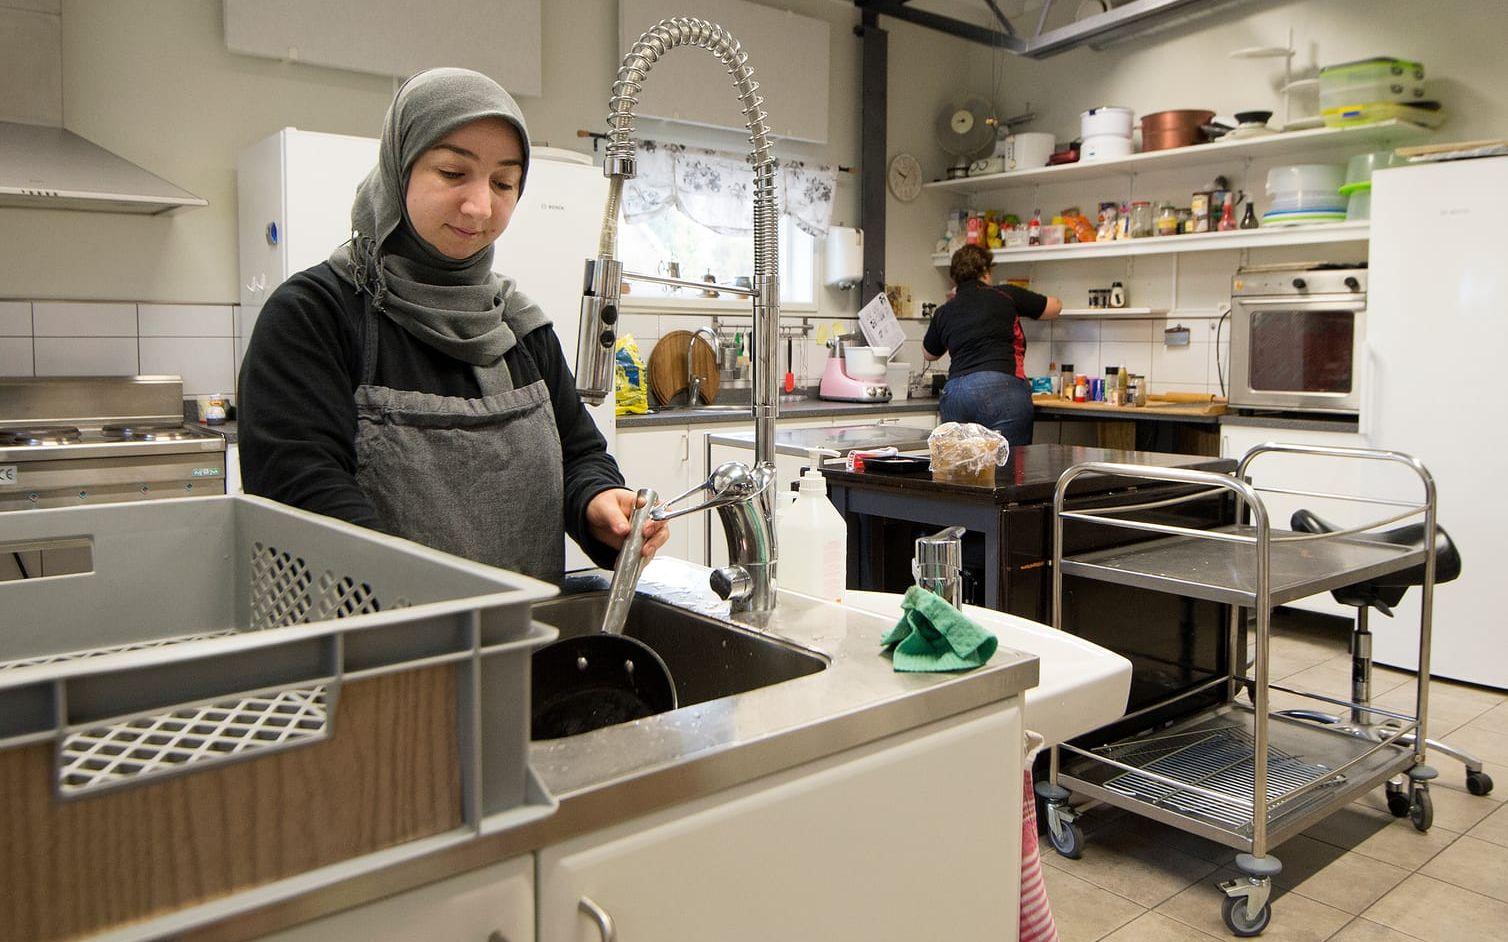 Trivs i köket. Naimeh Mardin från Syrien har varit på Resurscenter i sju månader. Hon arbetar i köket och förklarar att hon trivs jättebra.